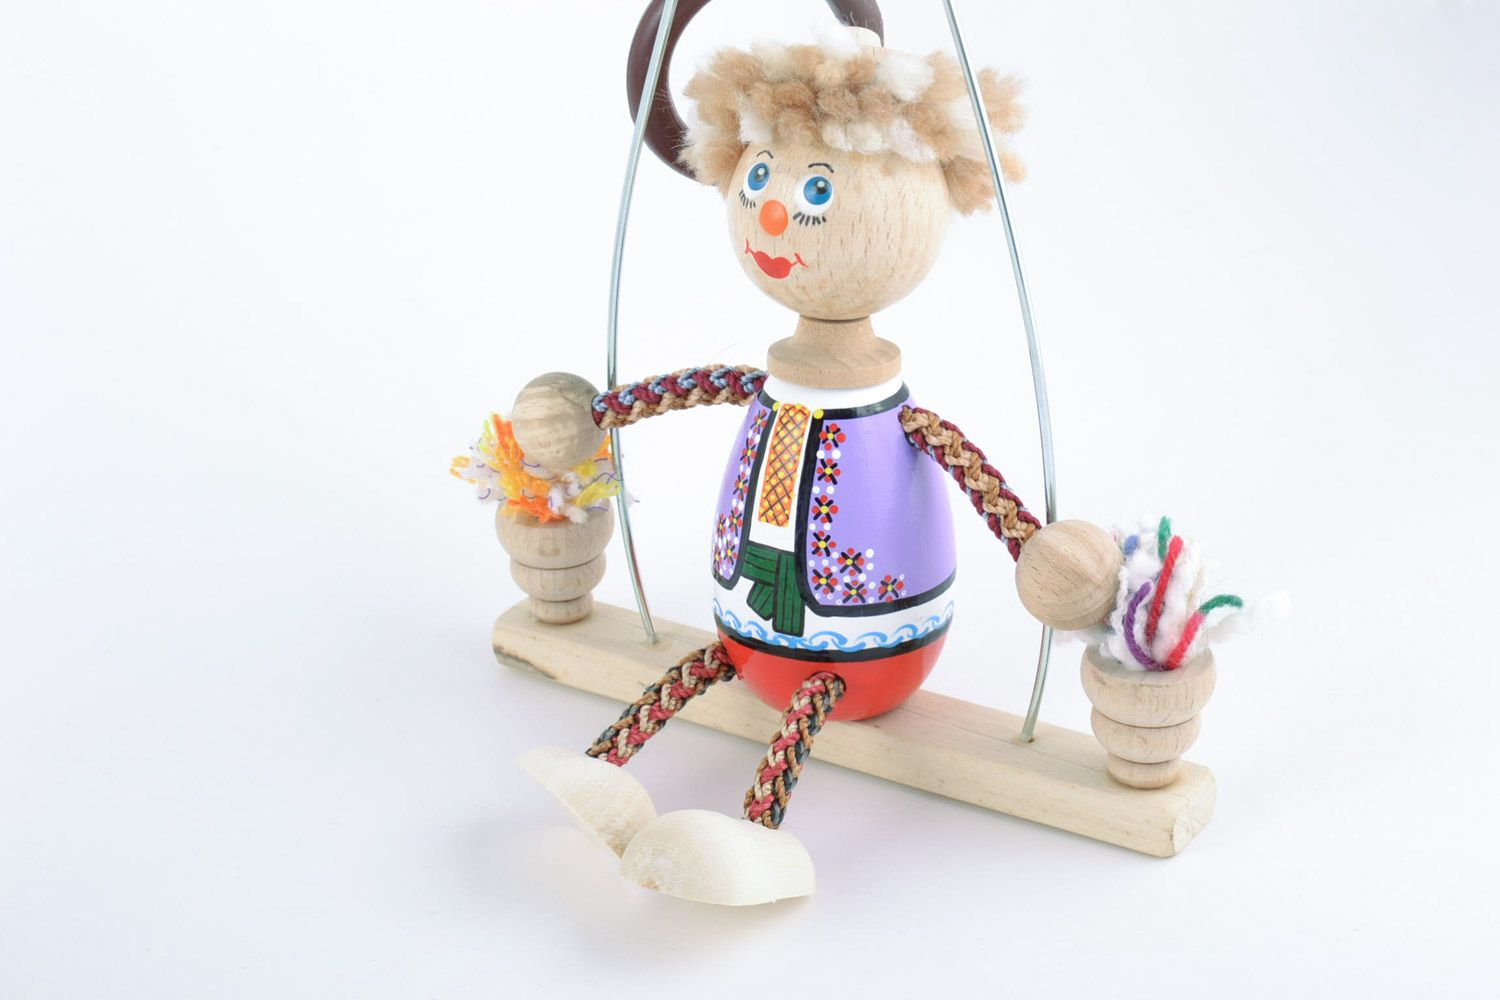 Игрушка из дерева на пружинке ручной работы расписанная красками в виде клоуна фото 4